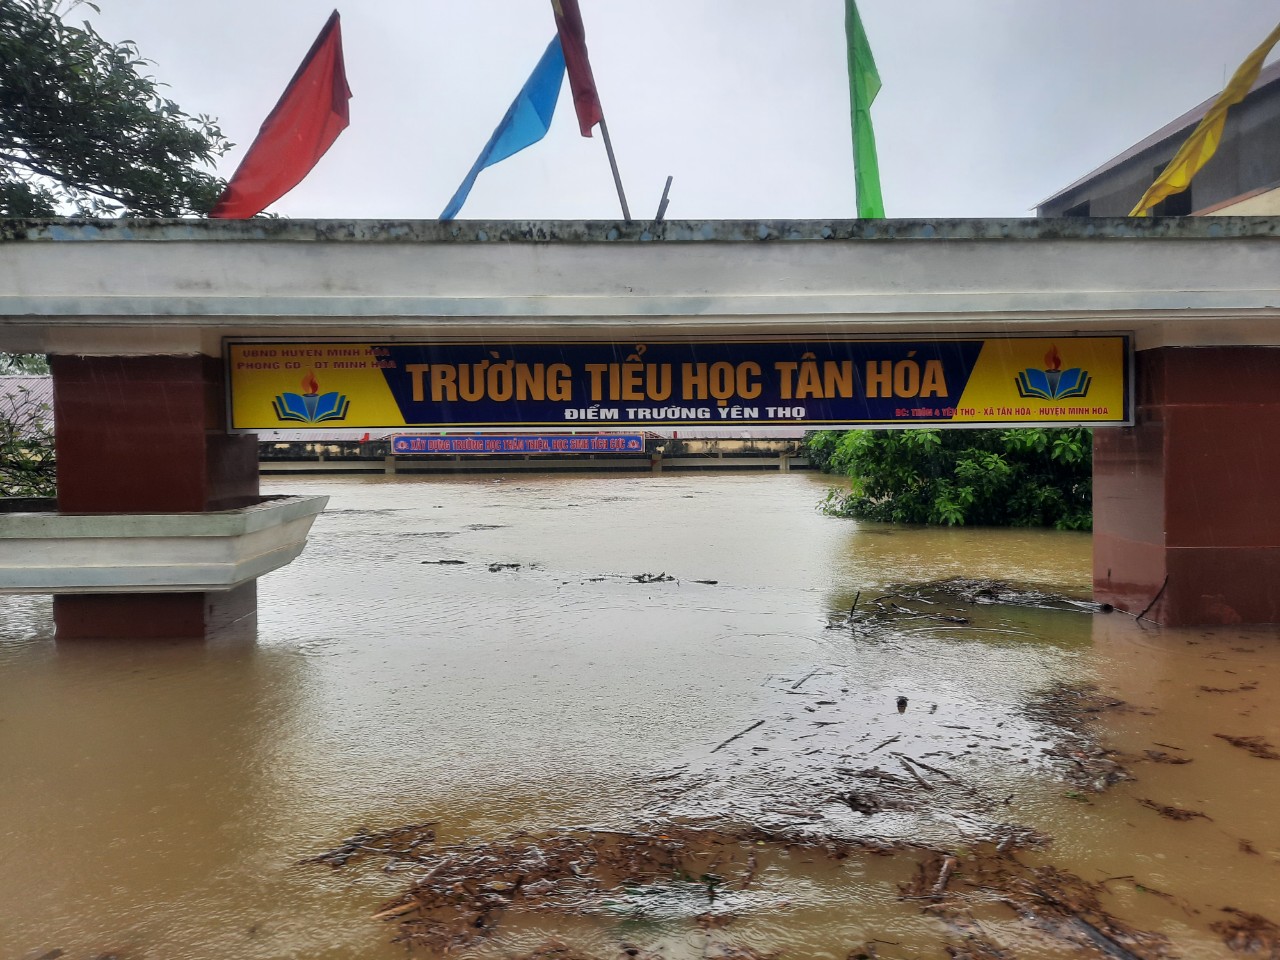 Trường Tiểu học xã Tân Hóa đã chìm trong biển nước.